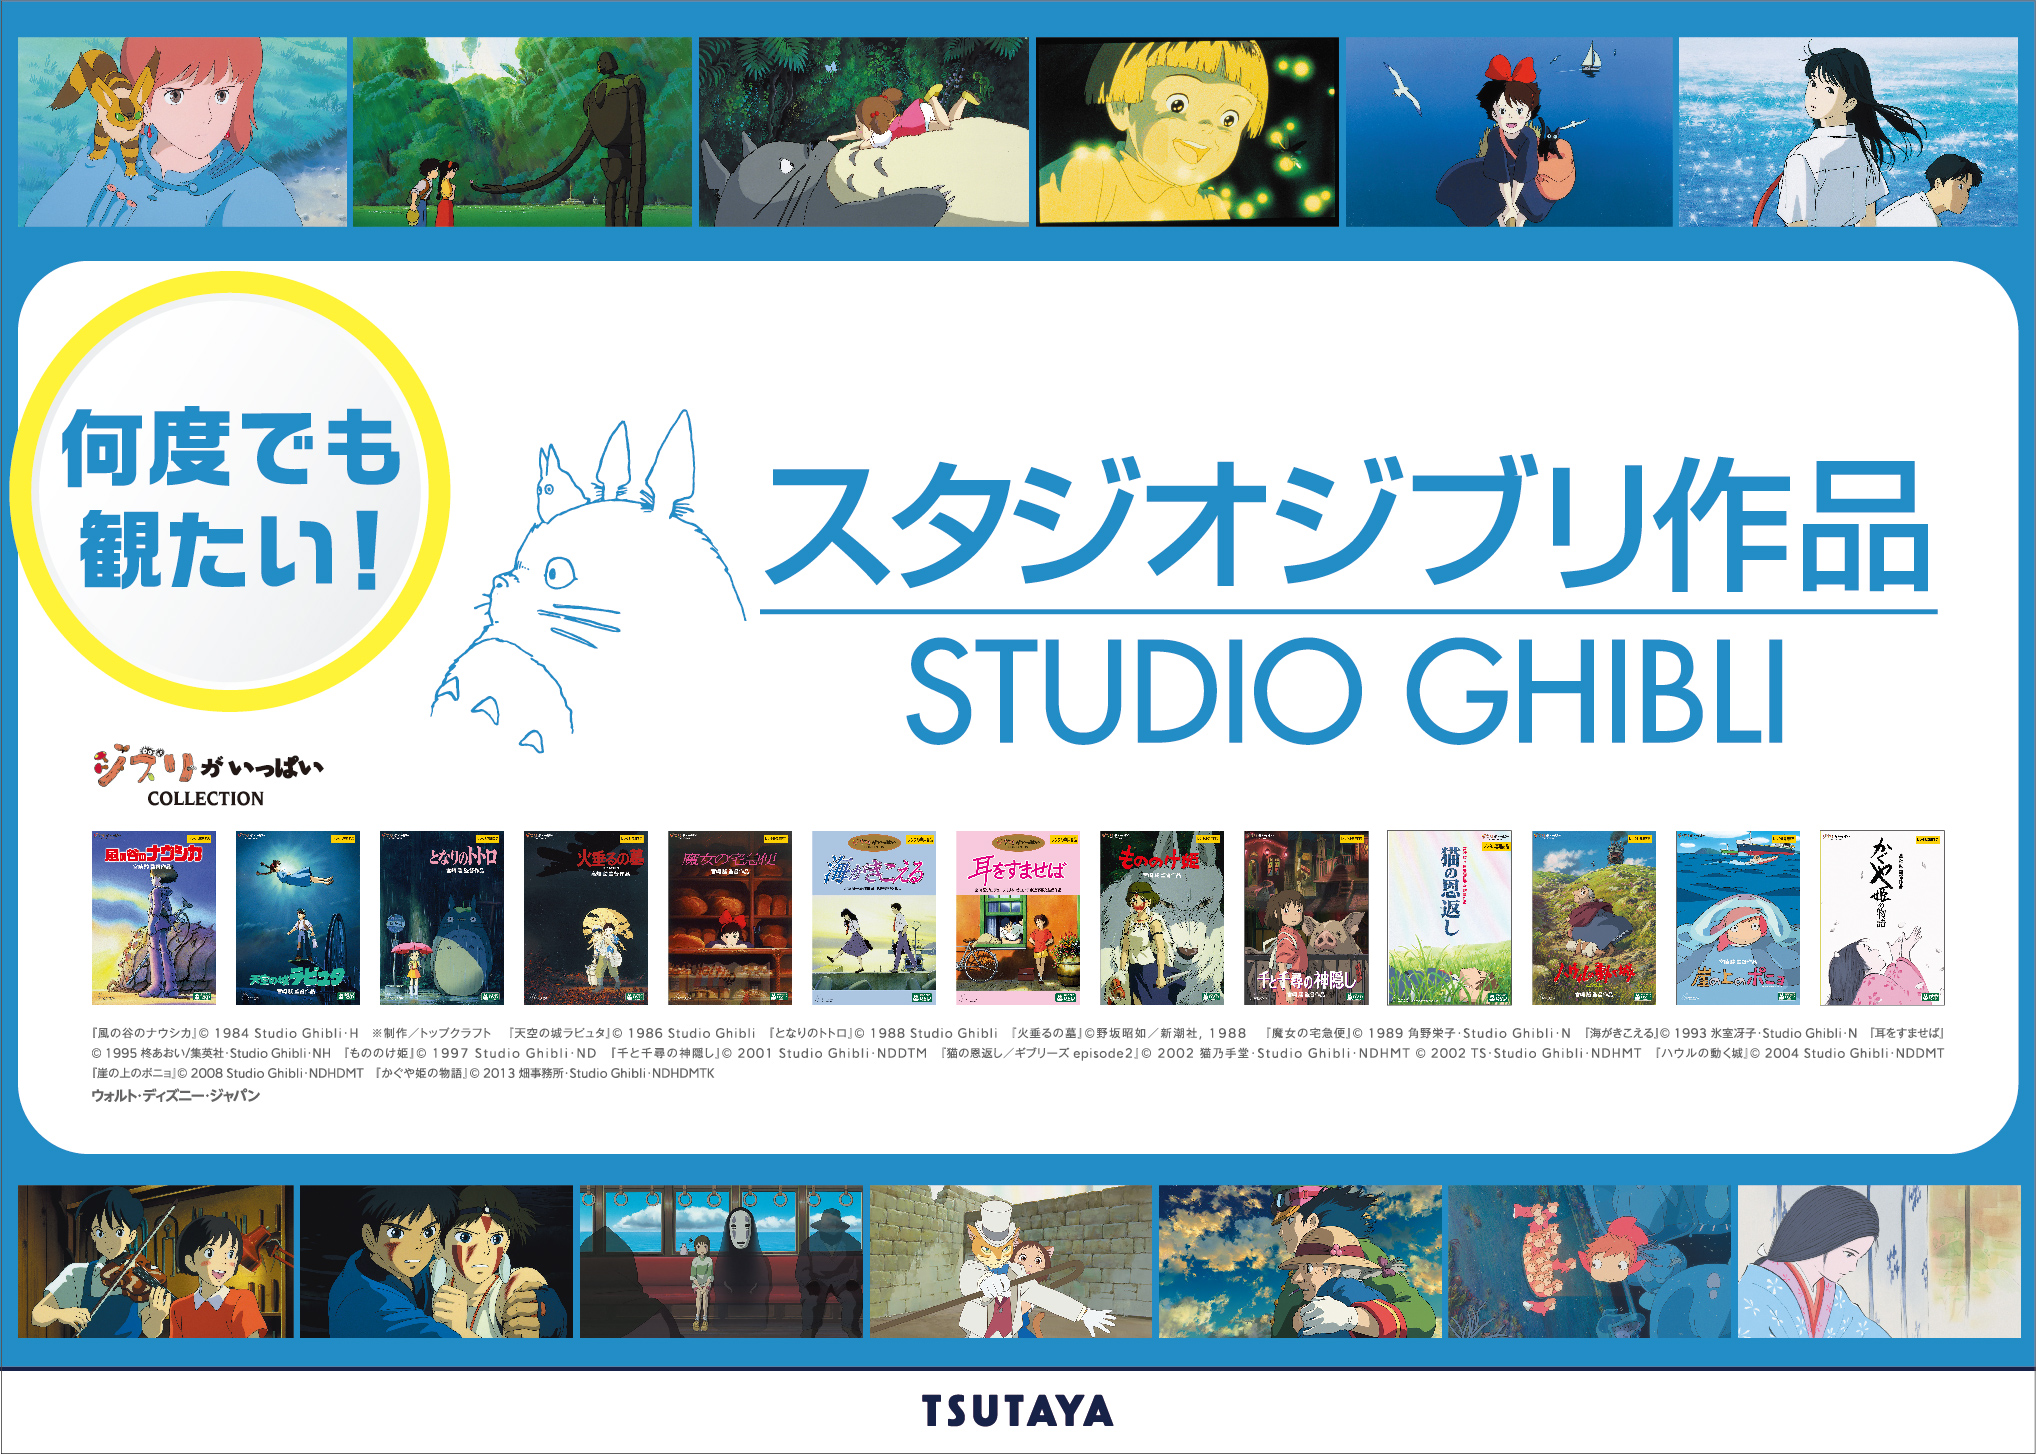 年末年始は Tsutayaでジブリ作品を楽しもう Tsutaya公式twitterで スタジオジブリ作品 クイズキャンペーン を12月25日 金 より開始 Ccc 蔦屋書店カンパニーのプレスリリース